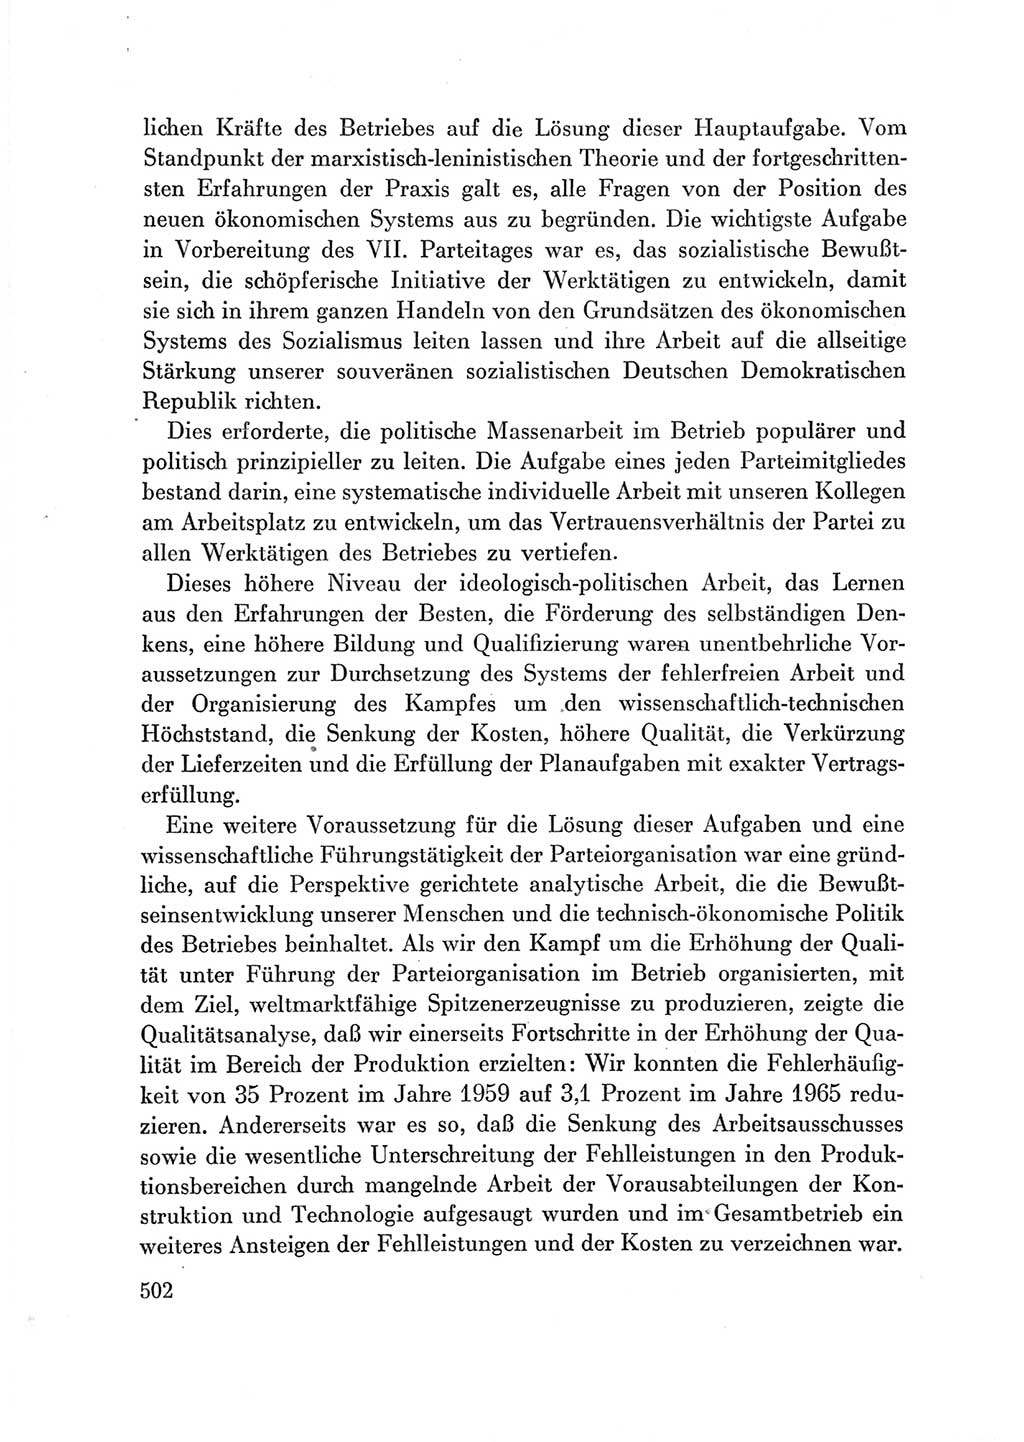 Protokoll der Verhandlungen des Ⅶ. Parteitages der Sozialistischen Einheitspartei Deutschlands (SED) [Deutsche Demokratische Republik (DDR)] 1967, Band Ⅲ, Seite 502 (Prot. Verh. Ⅶ. PT SED DDR 1967, Bd. Ⅲ, S. 502)